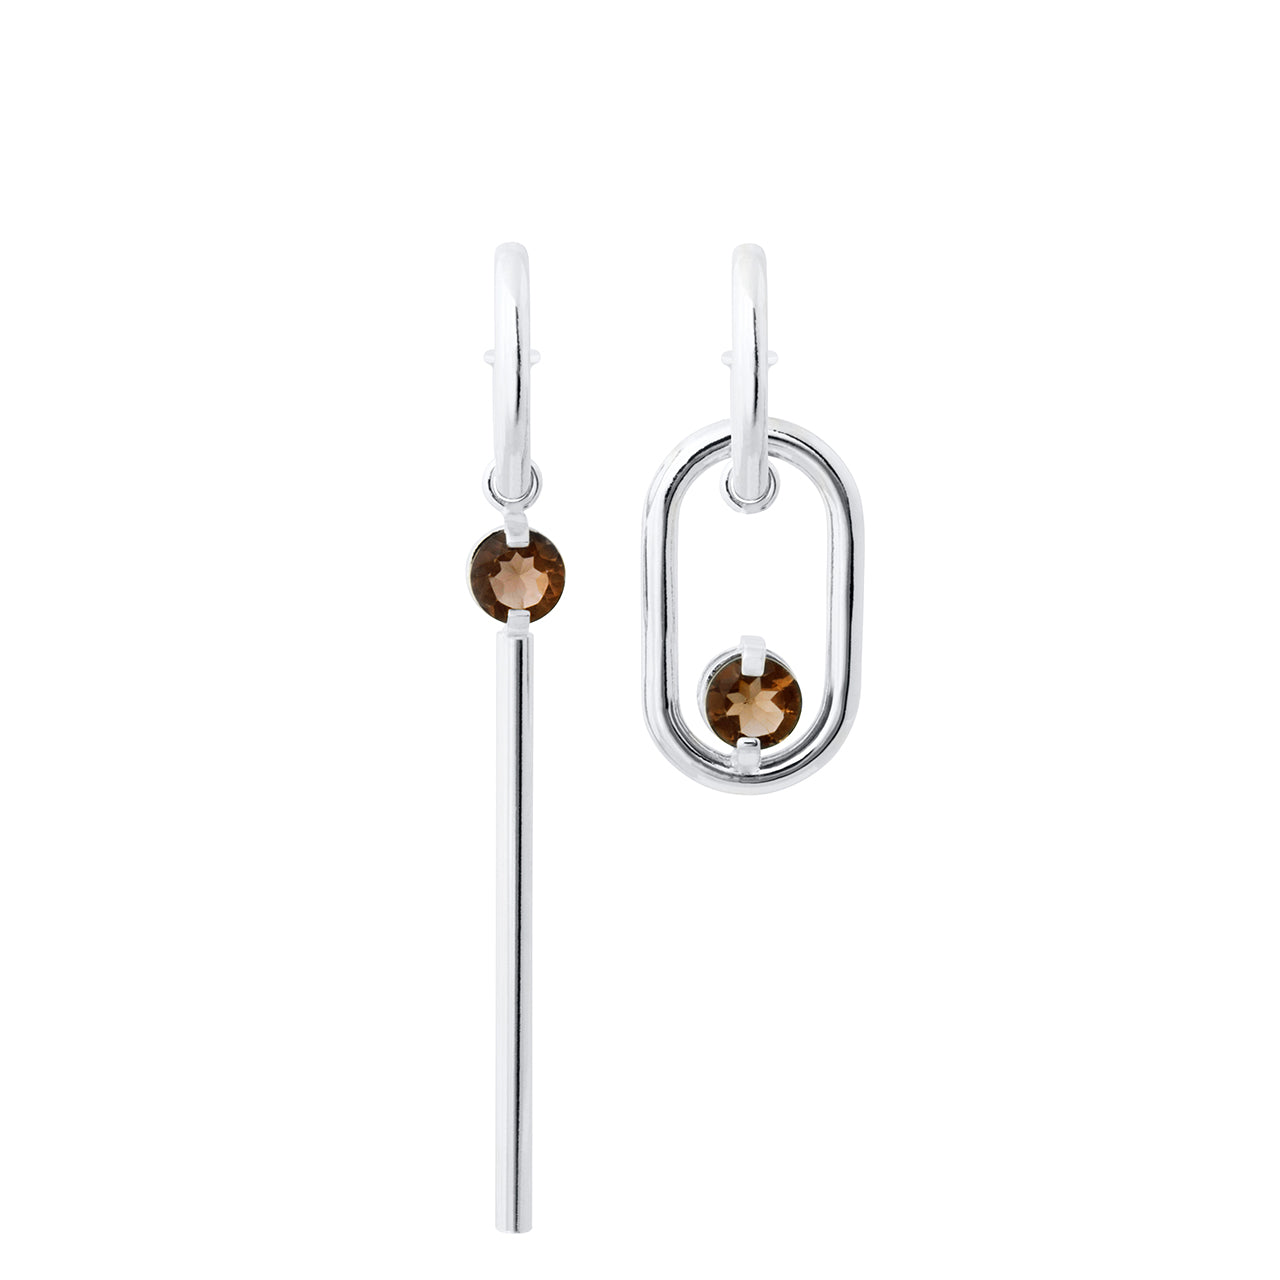 Two of A Kind earrings - Hermien